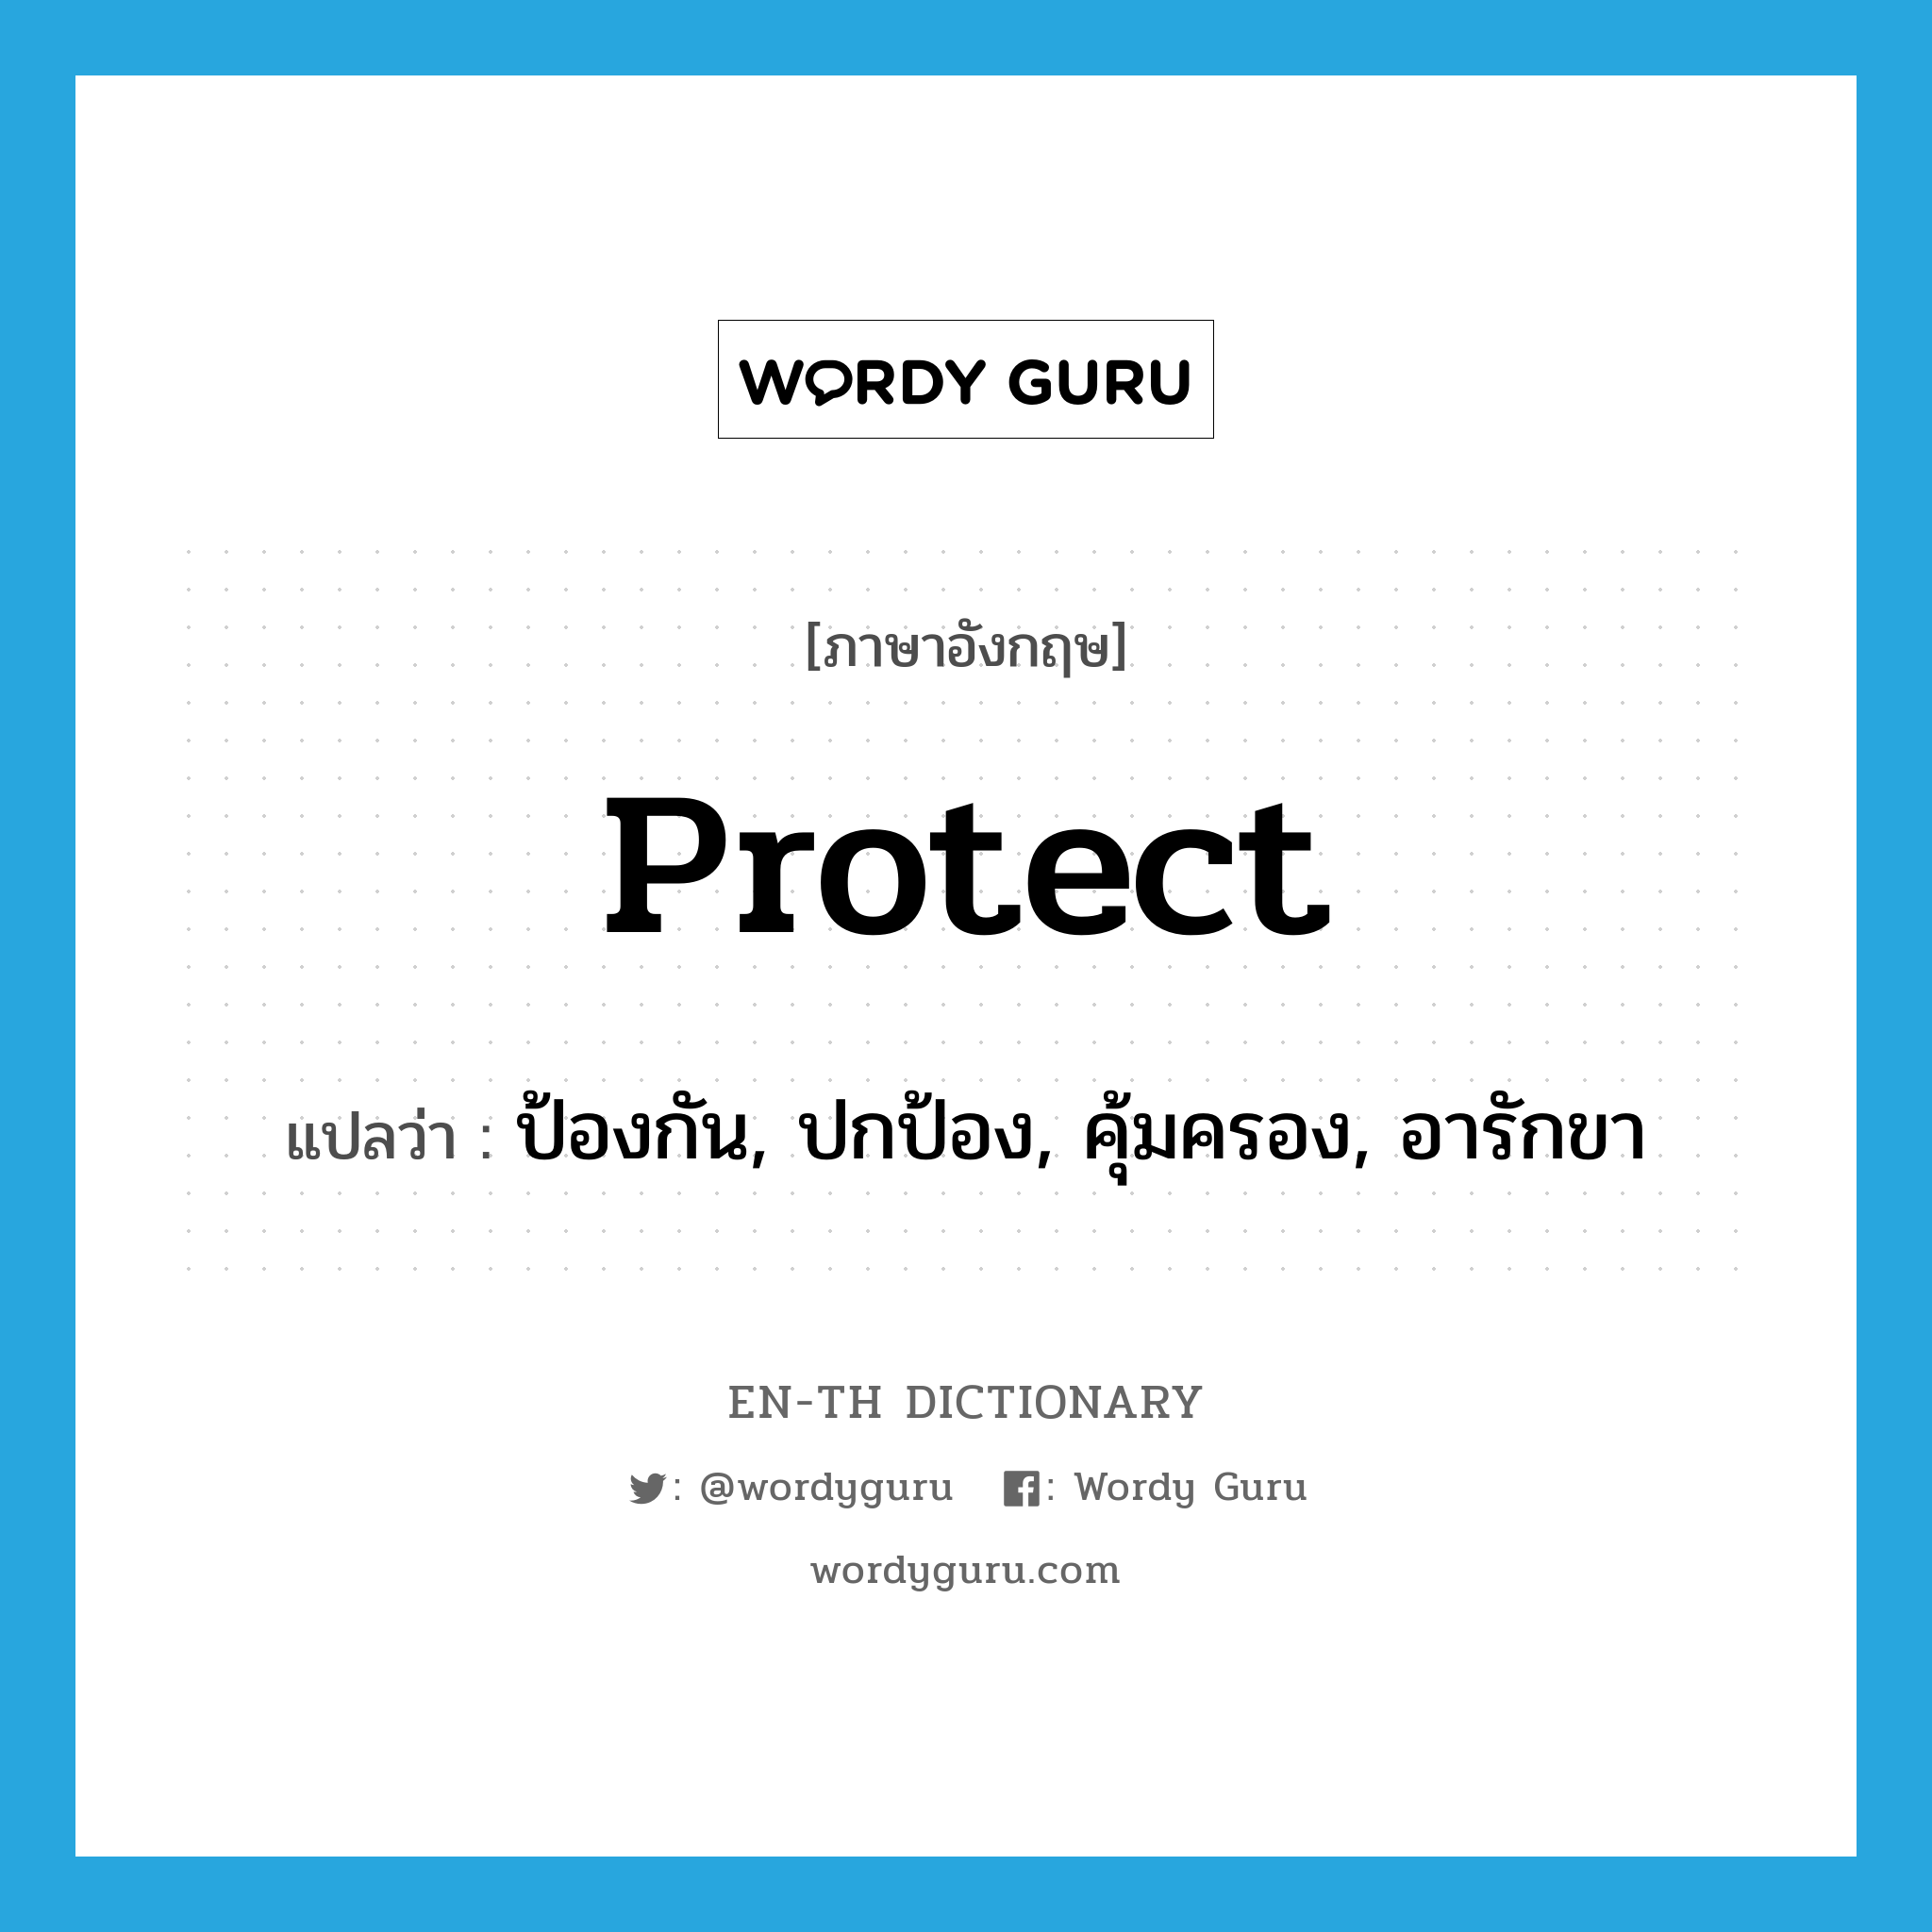 ป้องกัน, ปกป้อง, คุ้มครอง, อารักขา ภาษาอังกฤษ?, คำศัพท์ภาษาอังกฤษ ป้องกัน, ปกป้อง, คุ้มครอง, อารักขา แปลว่า protect ประเภท VT หมวด VT